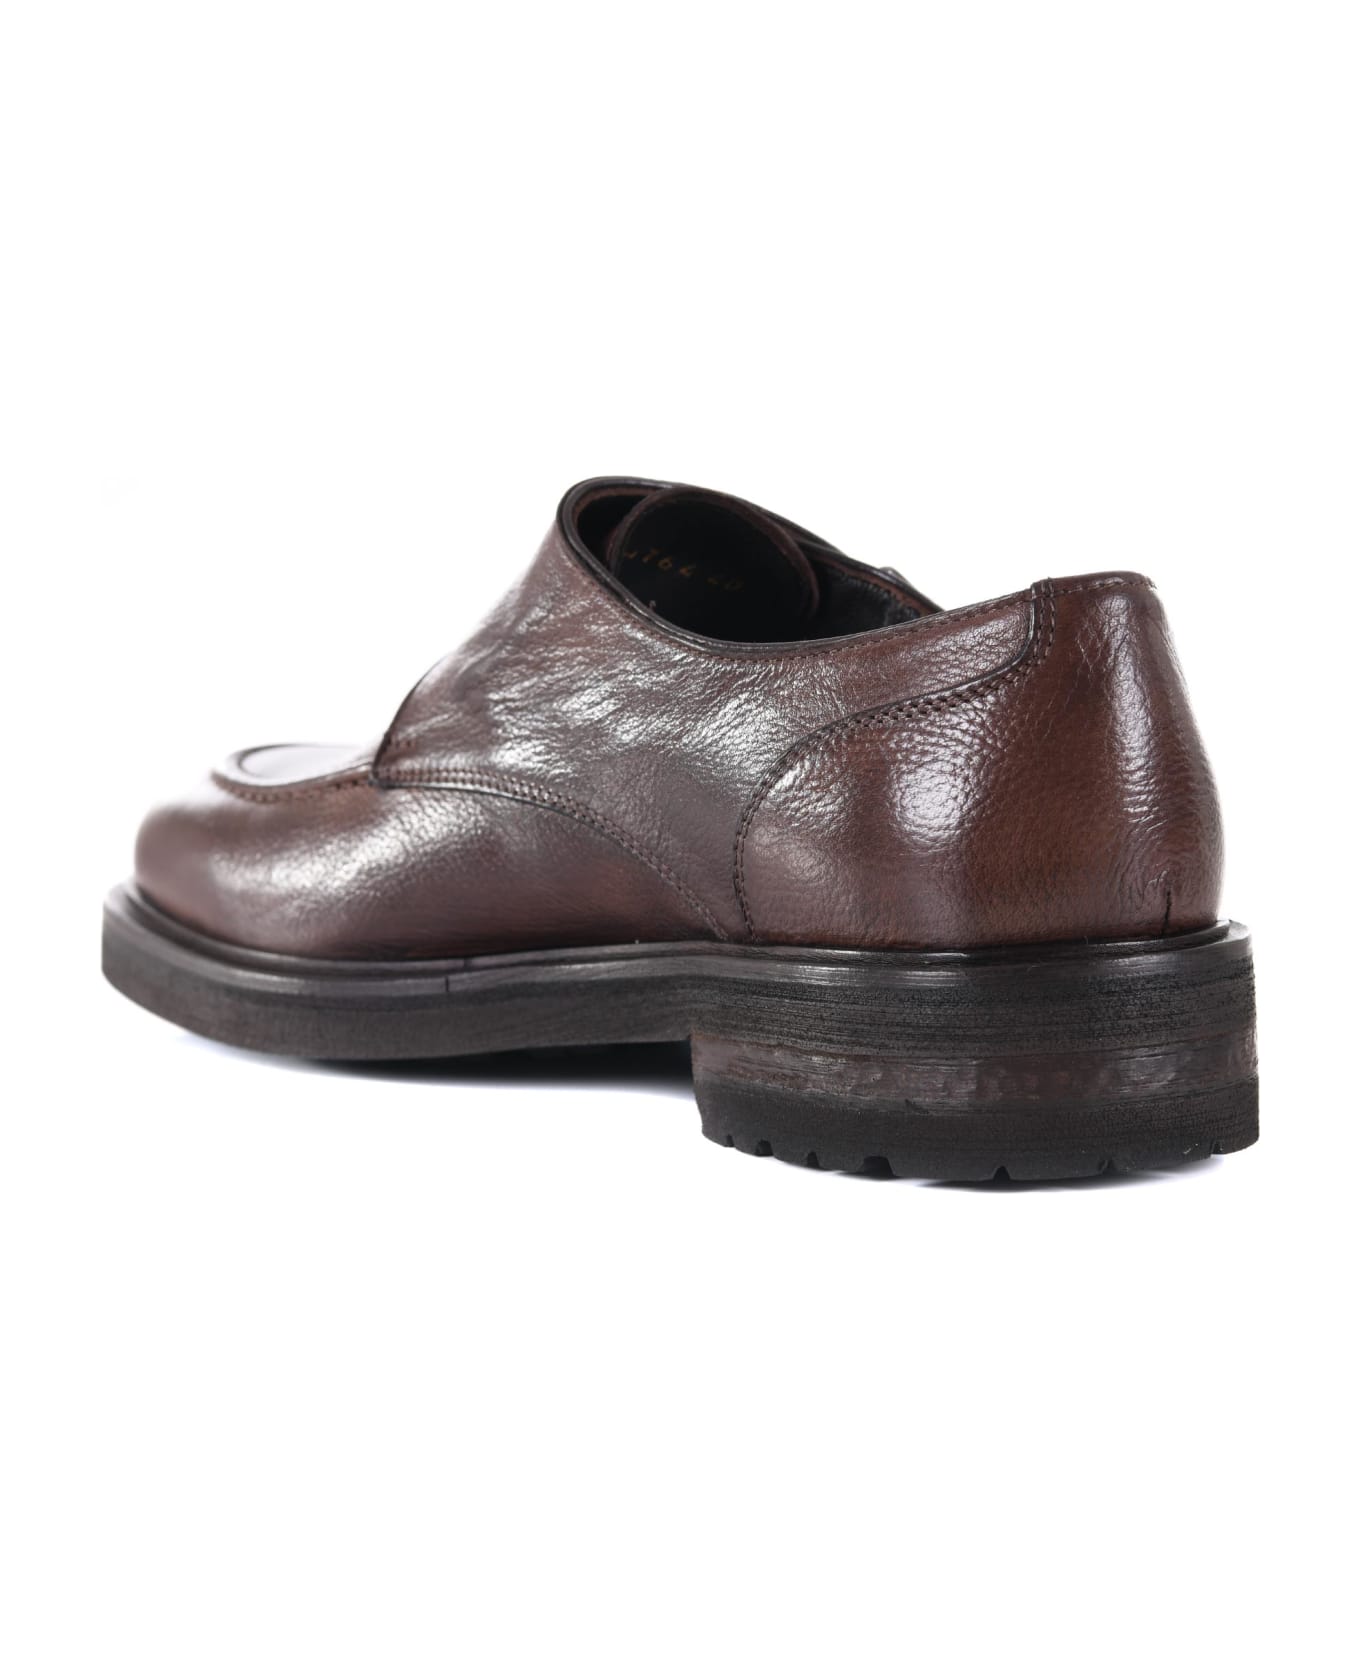 J. Wilton Jerold Wilton Shoes - Marrone